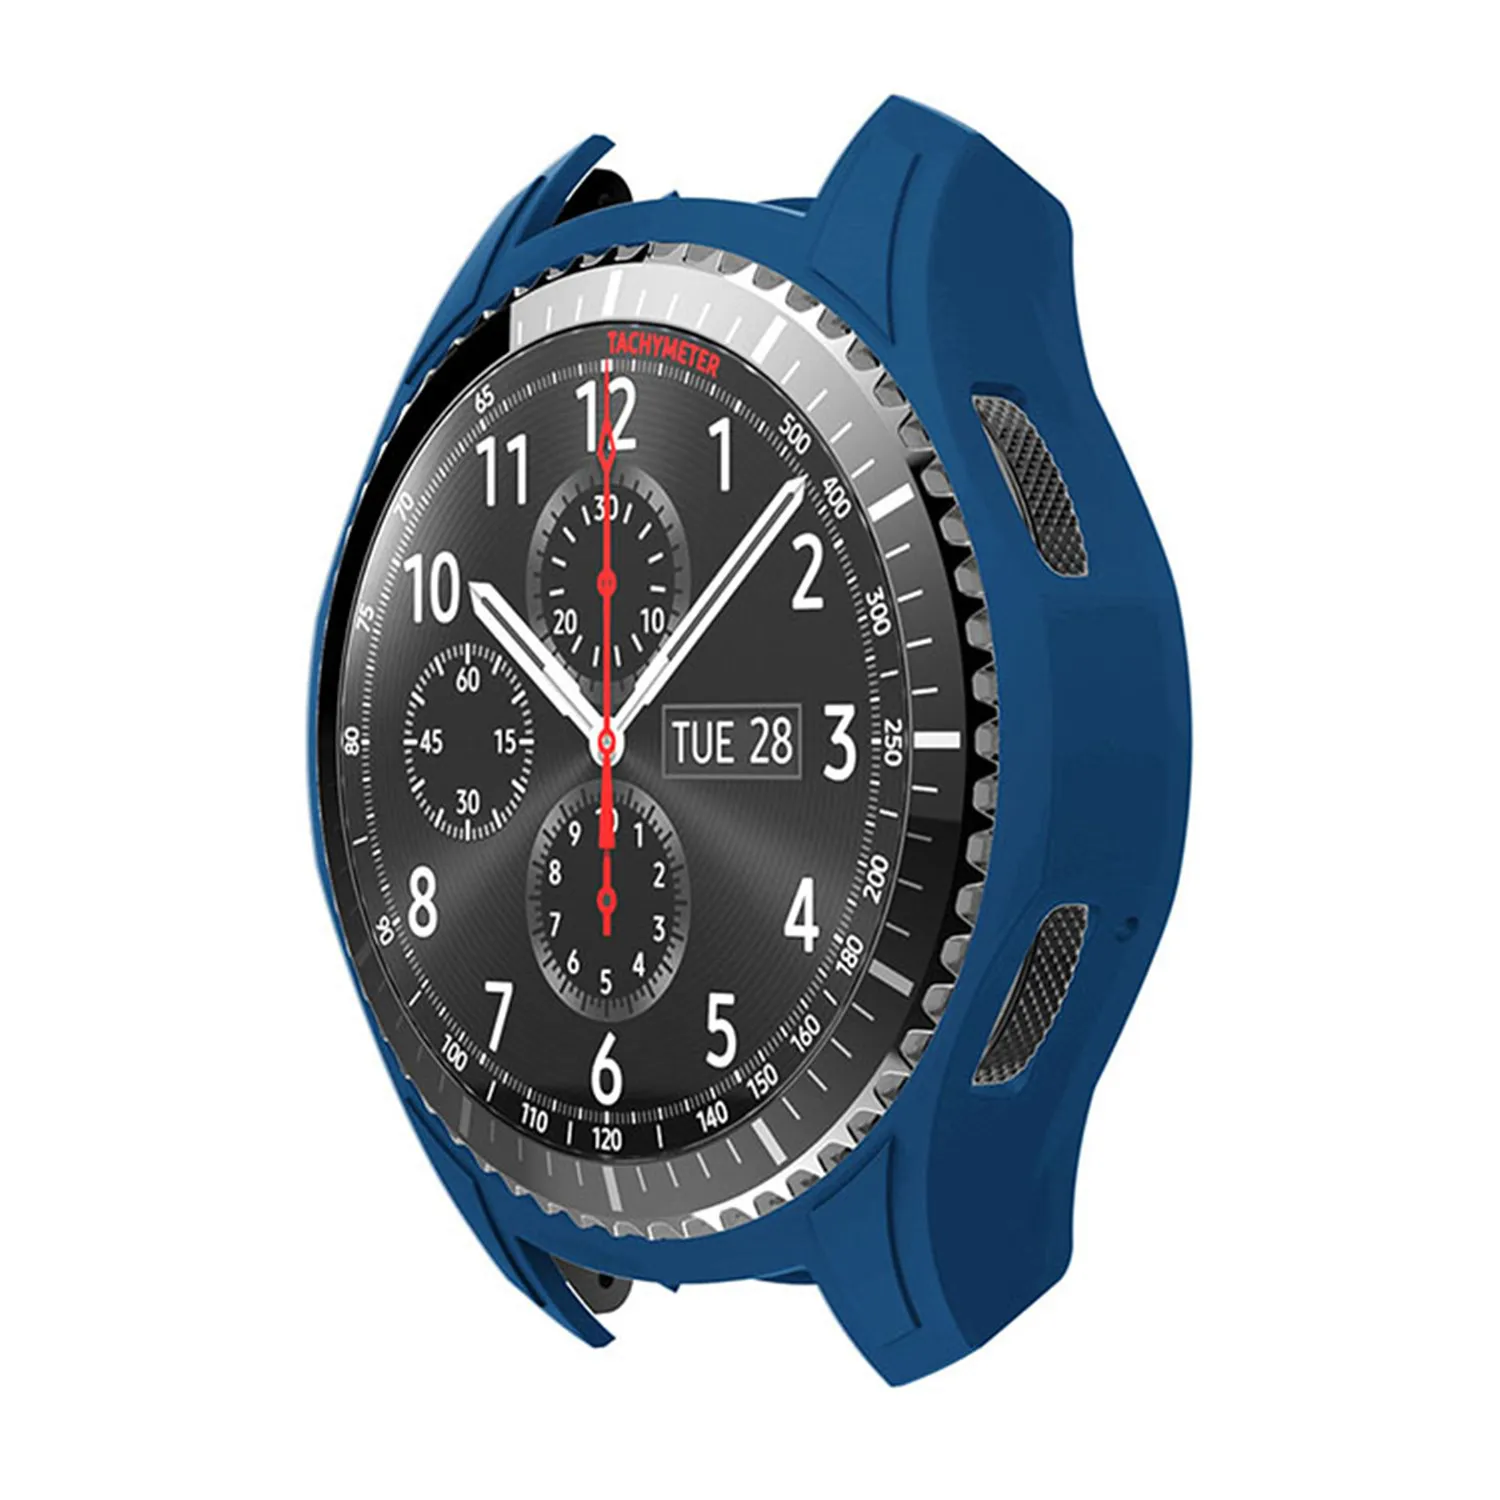 Мягкий силиконовый чехол для часов samsung Galaxy Watch 46 мм чехол для смарт часов оболочка для samsung gear S3 Frontier Cover